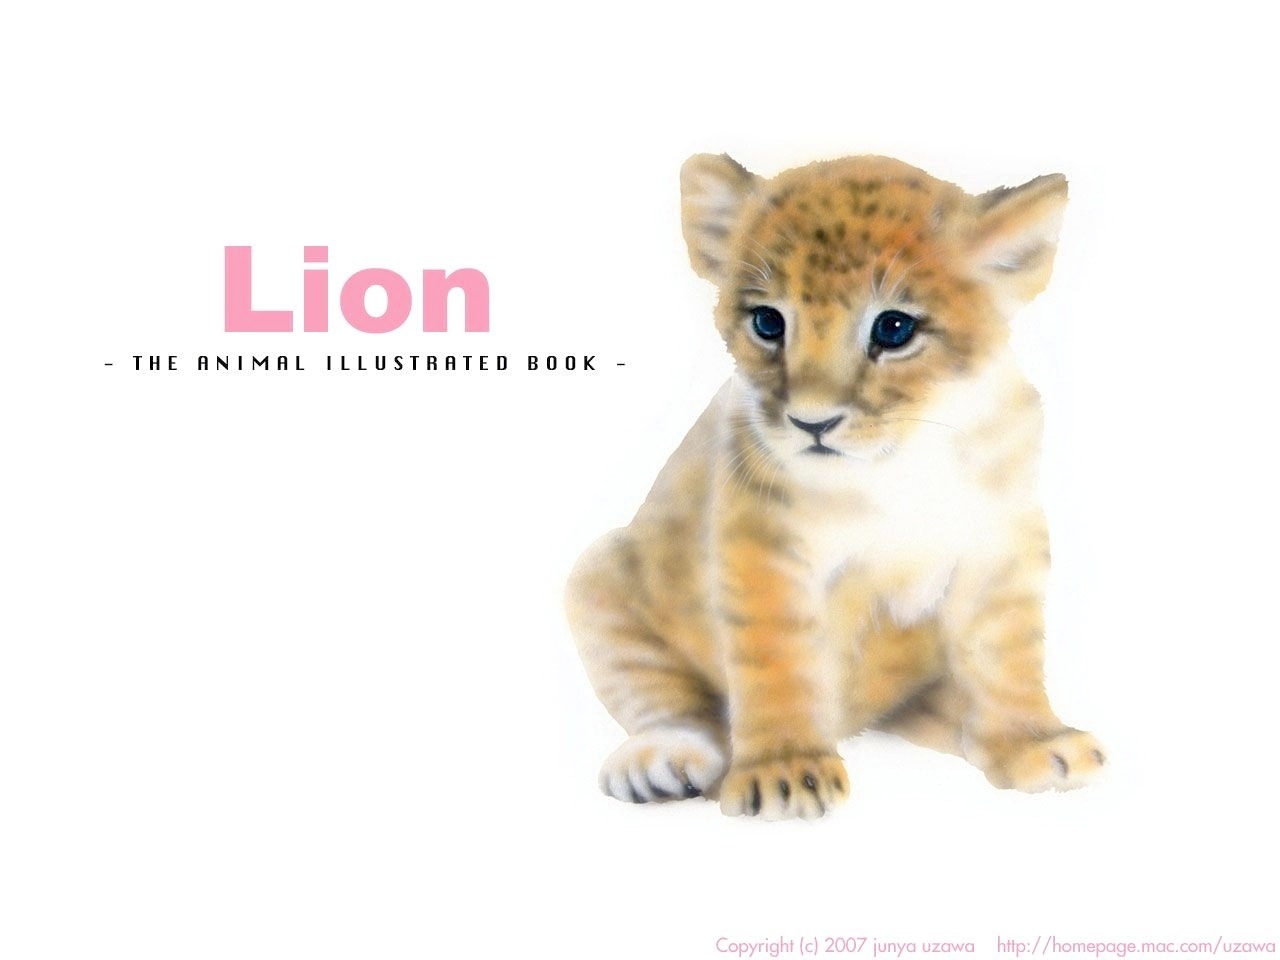 リアリズム絵画 動物の絵 動物イラスト ライオン おすわりするライオンの赤ちゃん